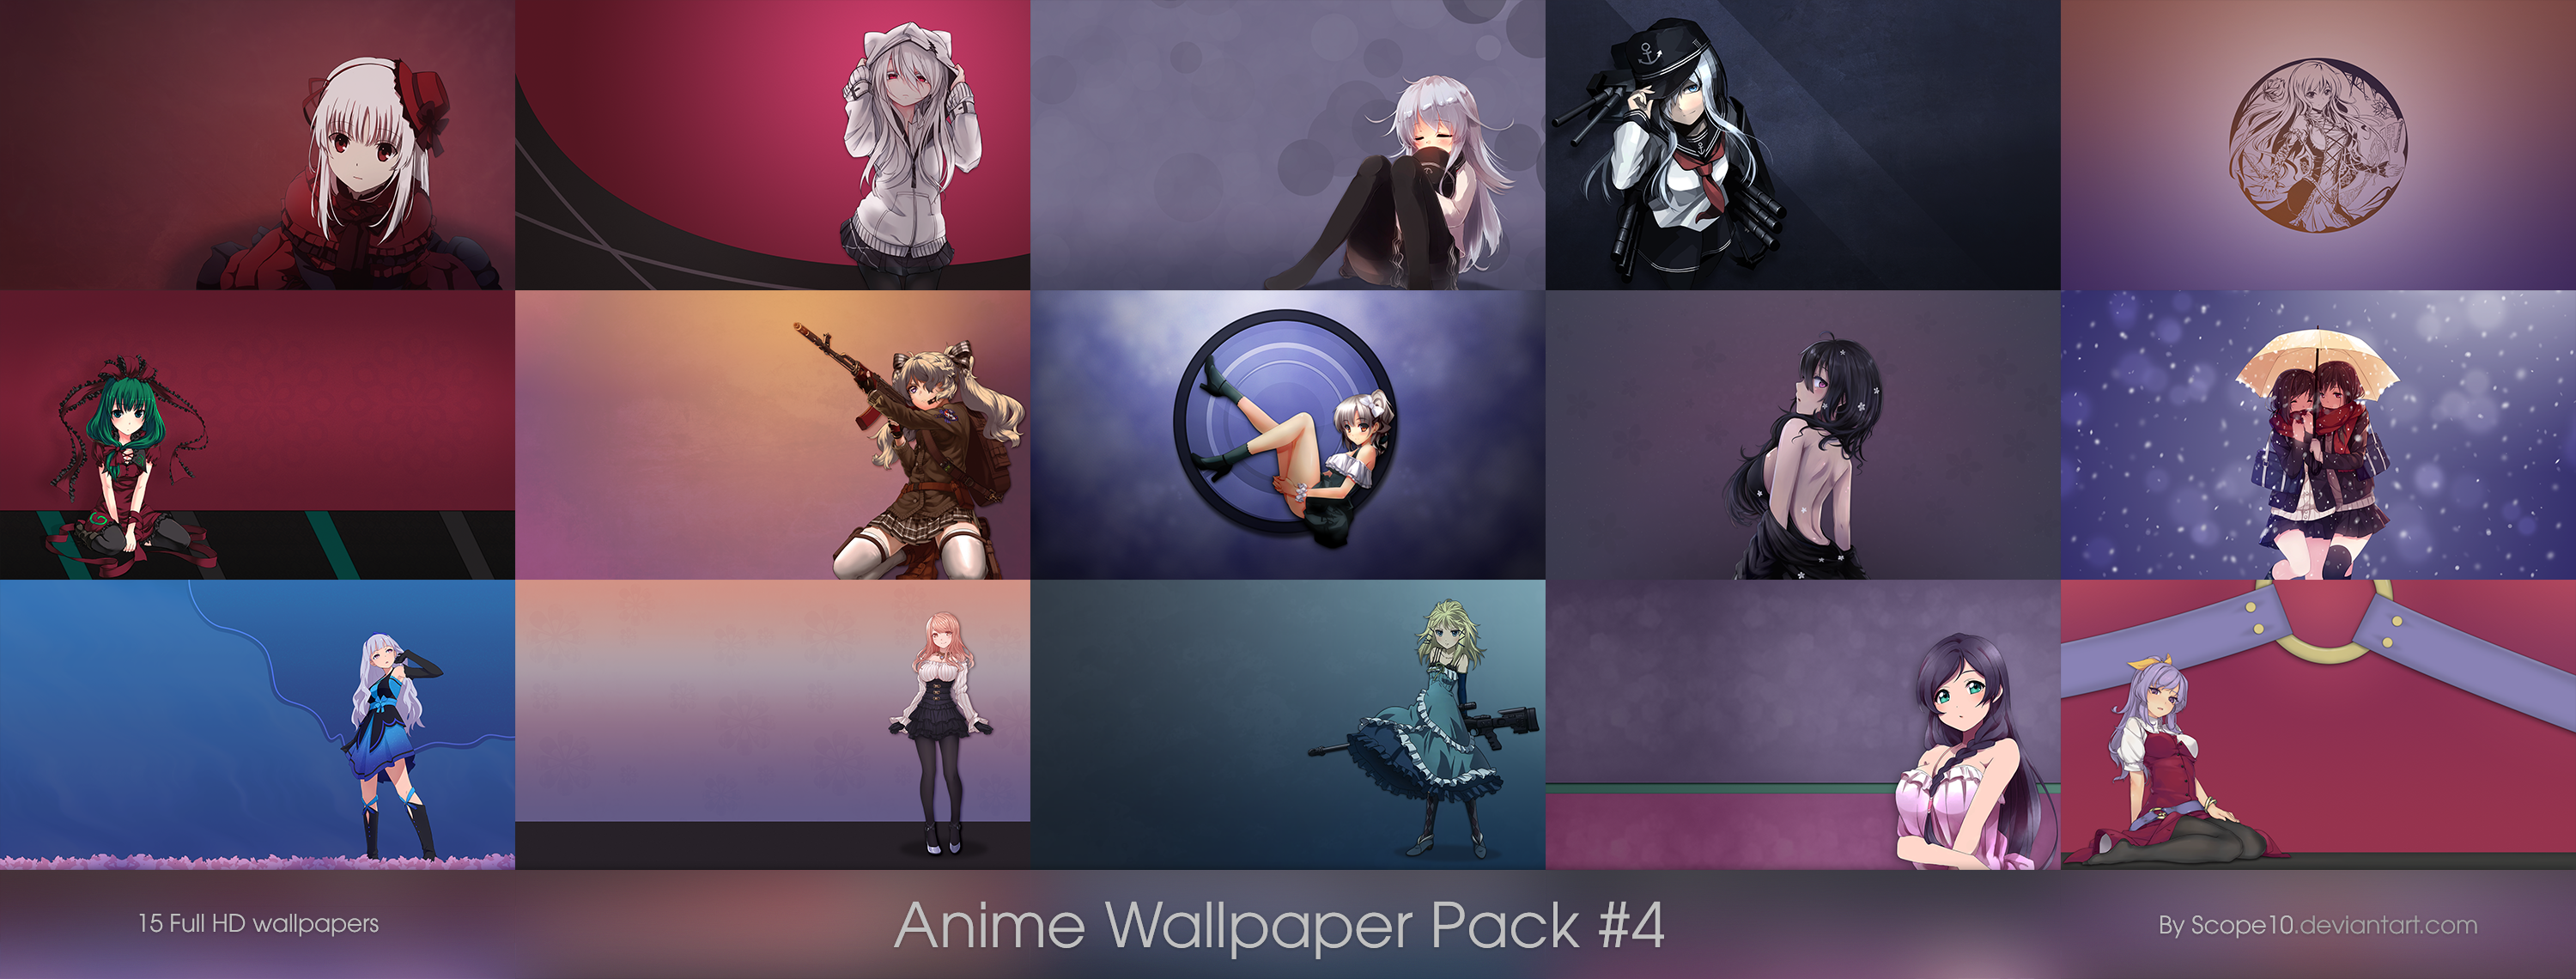 Wallpaper Pack Anime - KibrisPDR